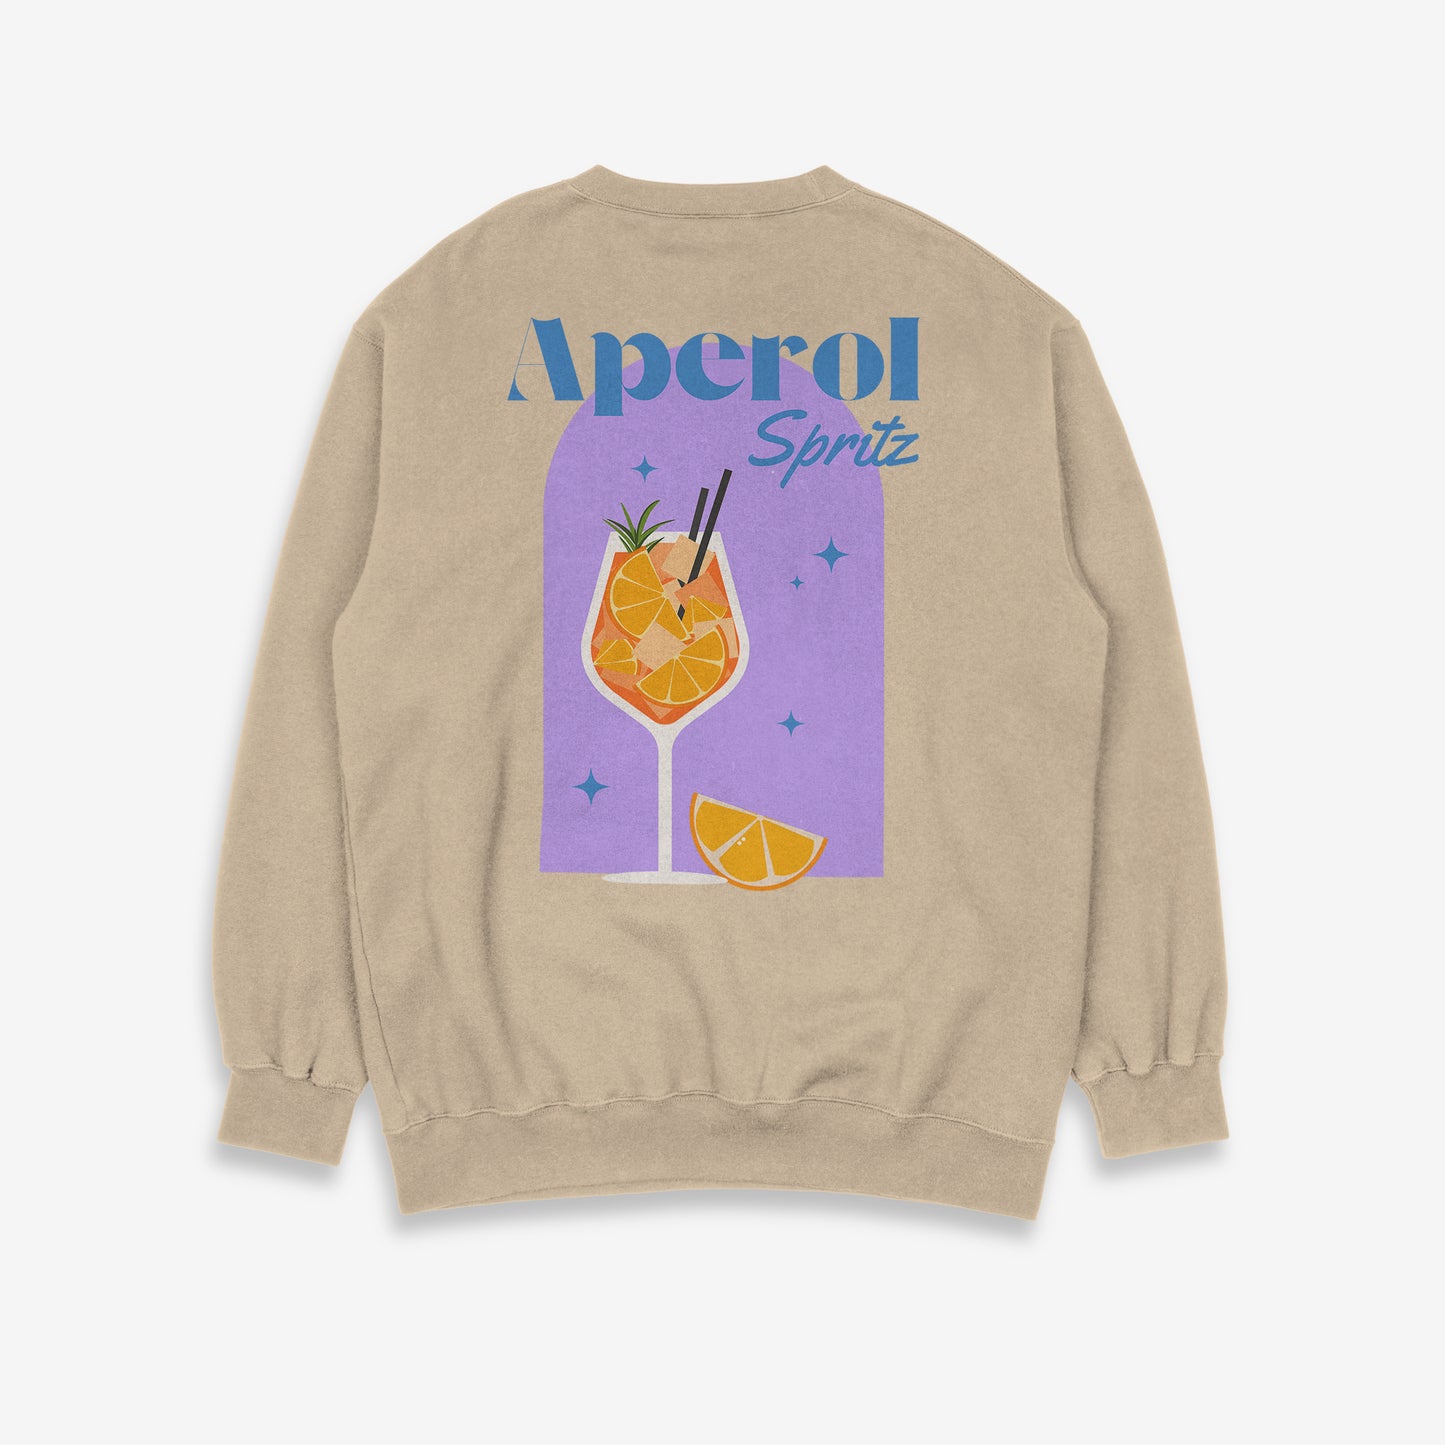 Aperol Spritz Sweatshirt